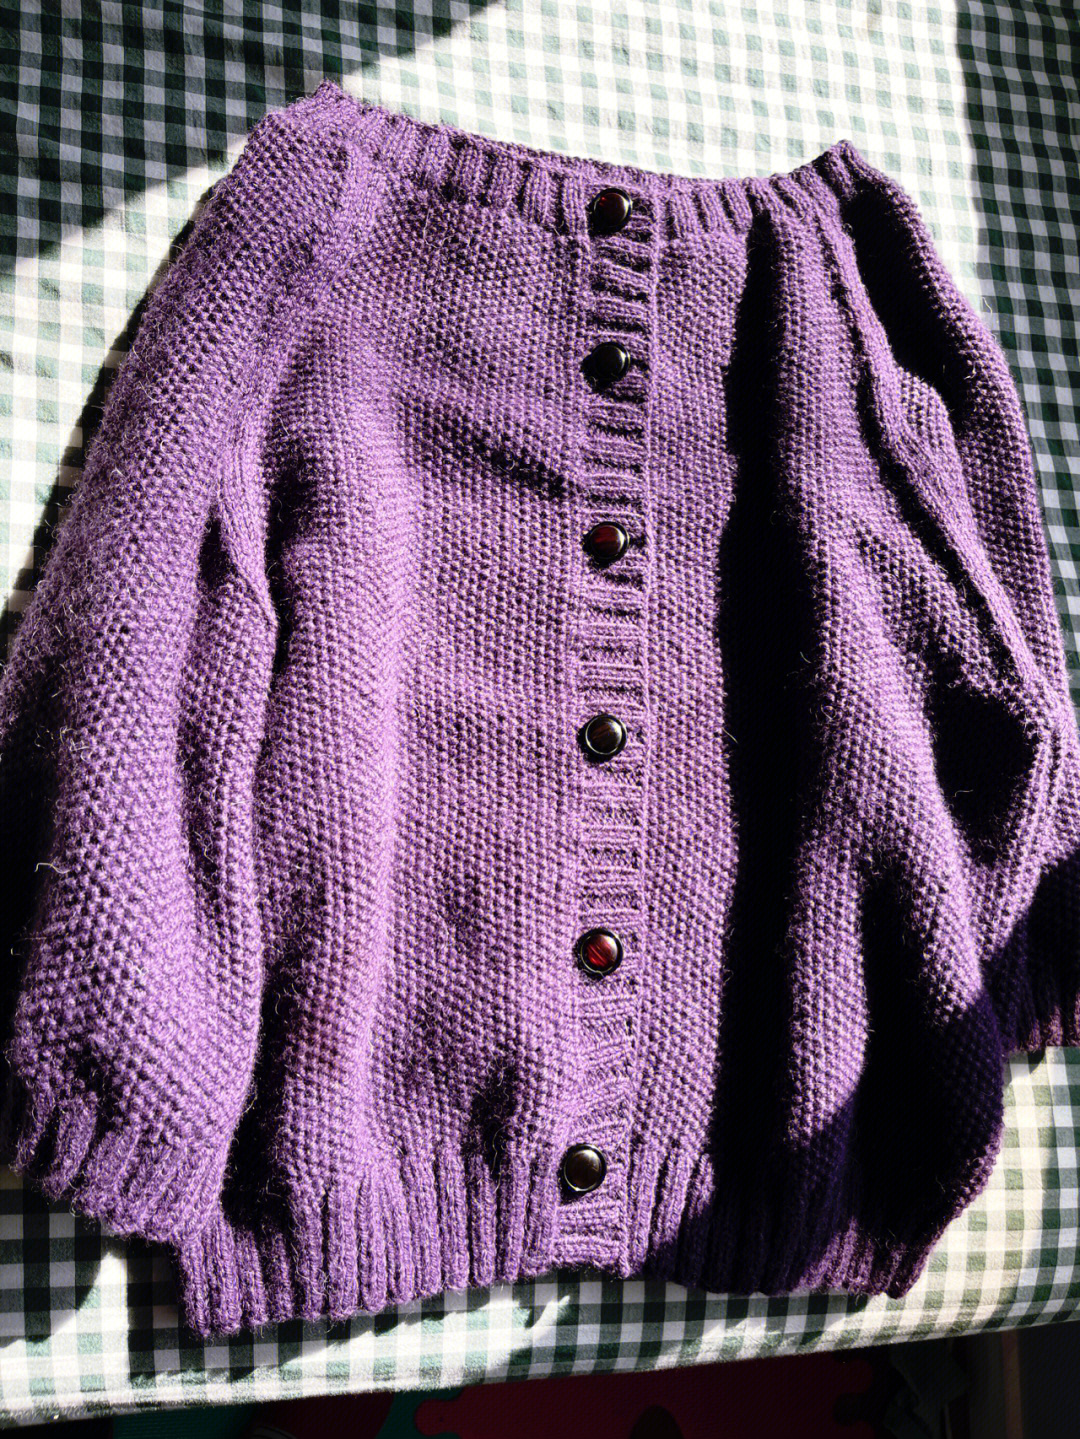 分片织毛衣方法全集图片